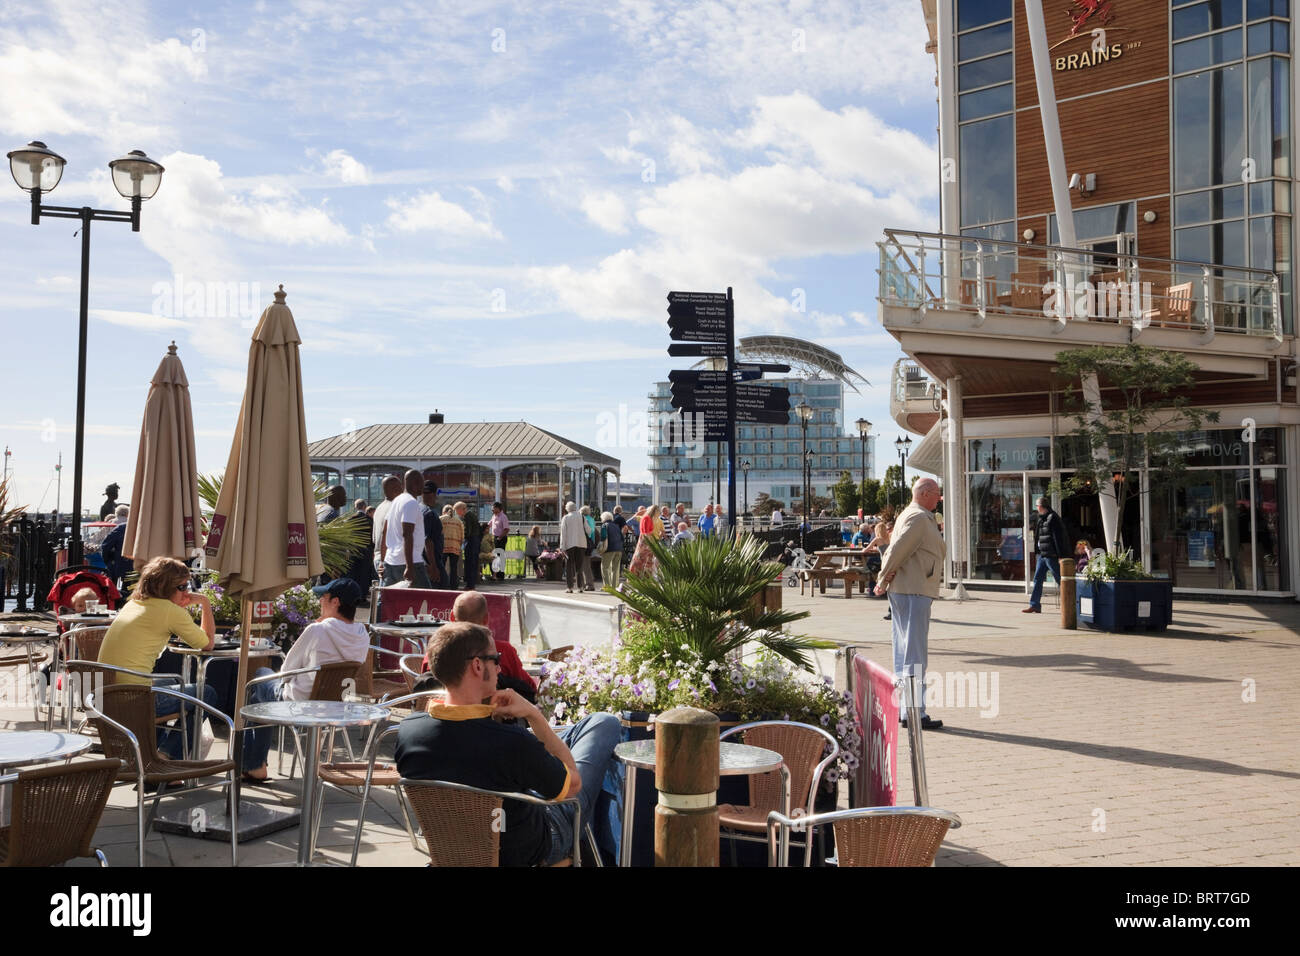 Les gens assis à l'extérieur en terrasses de cafés sur le bord de mer. Mermaid Quay, la baie de Cardiff, Glamorgan, Pays de Galles, Royaume-Uni Banque D'Images